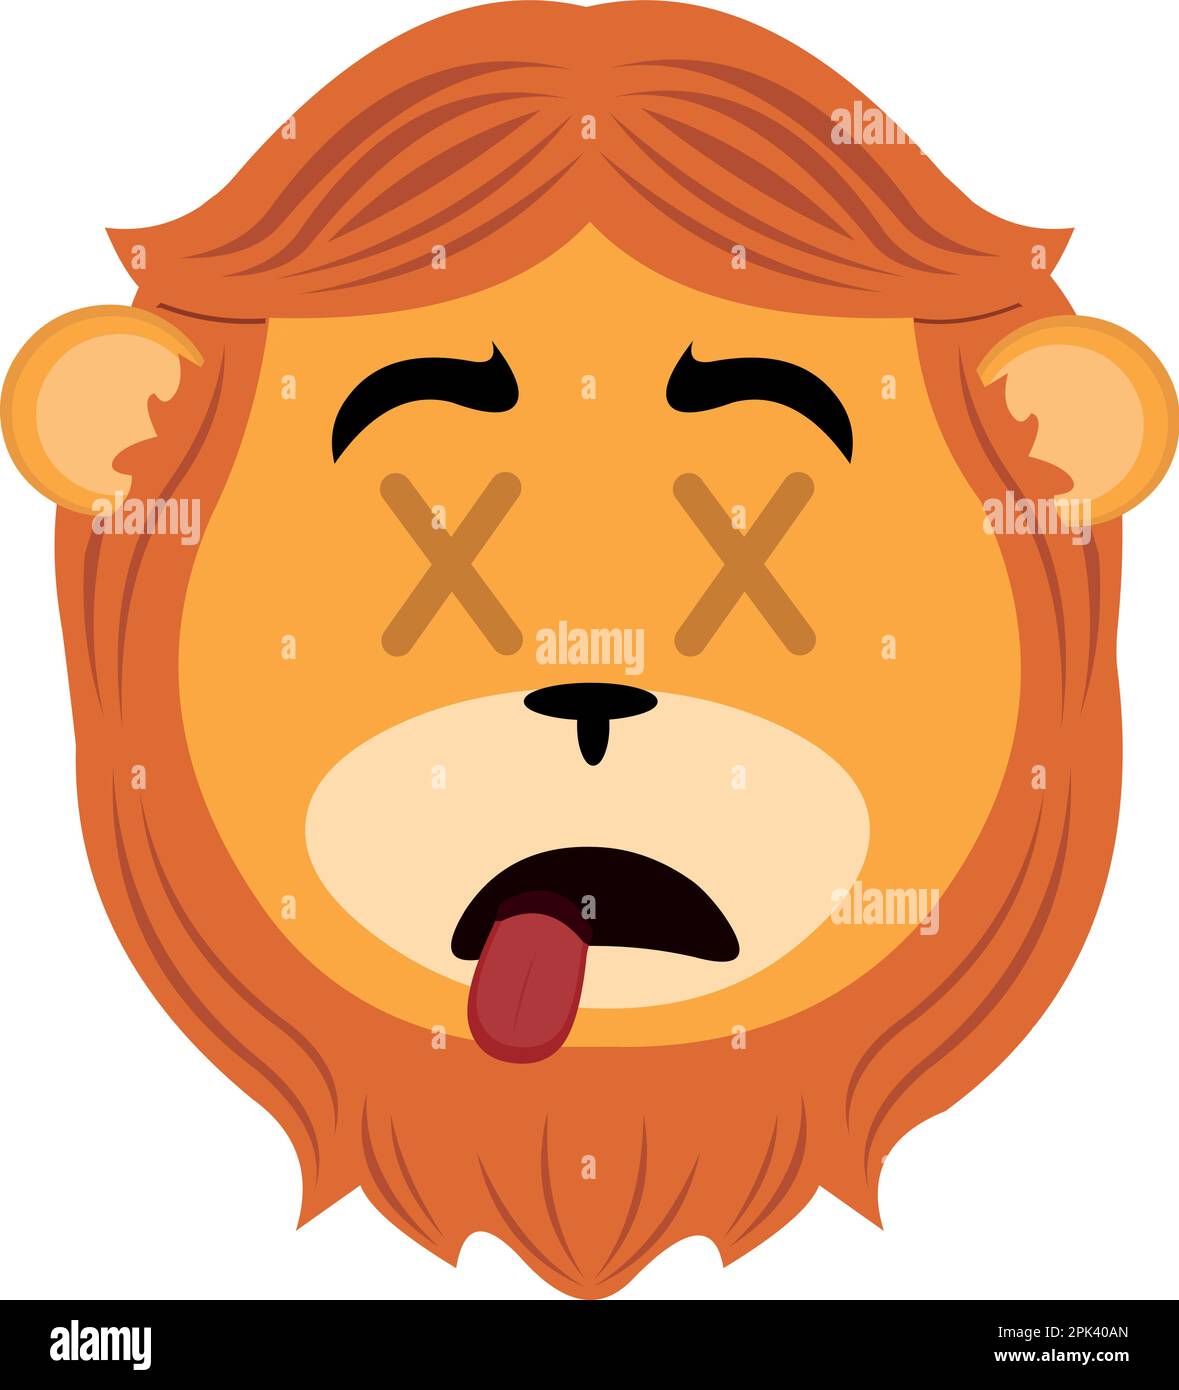 vektorbild eines toten Cartoon-Löwen mit Augen in Form von Kreuzen Stock Vektor